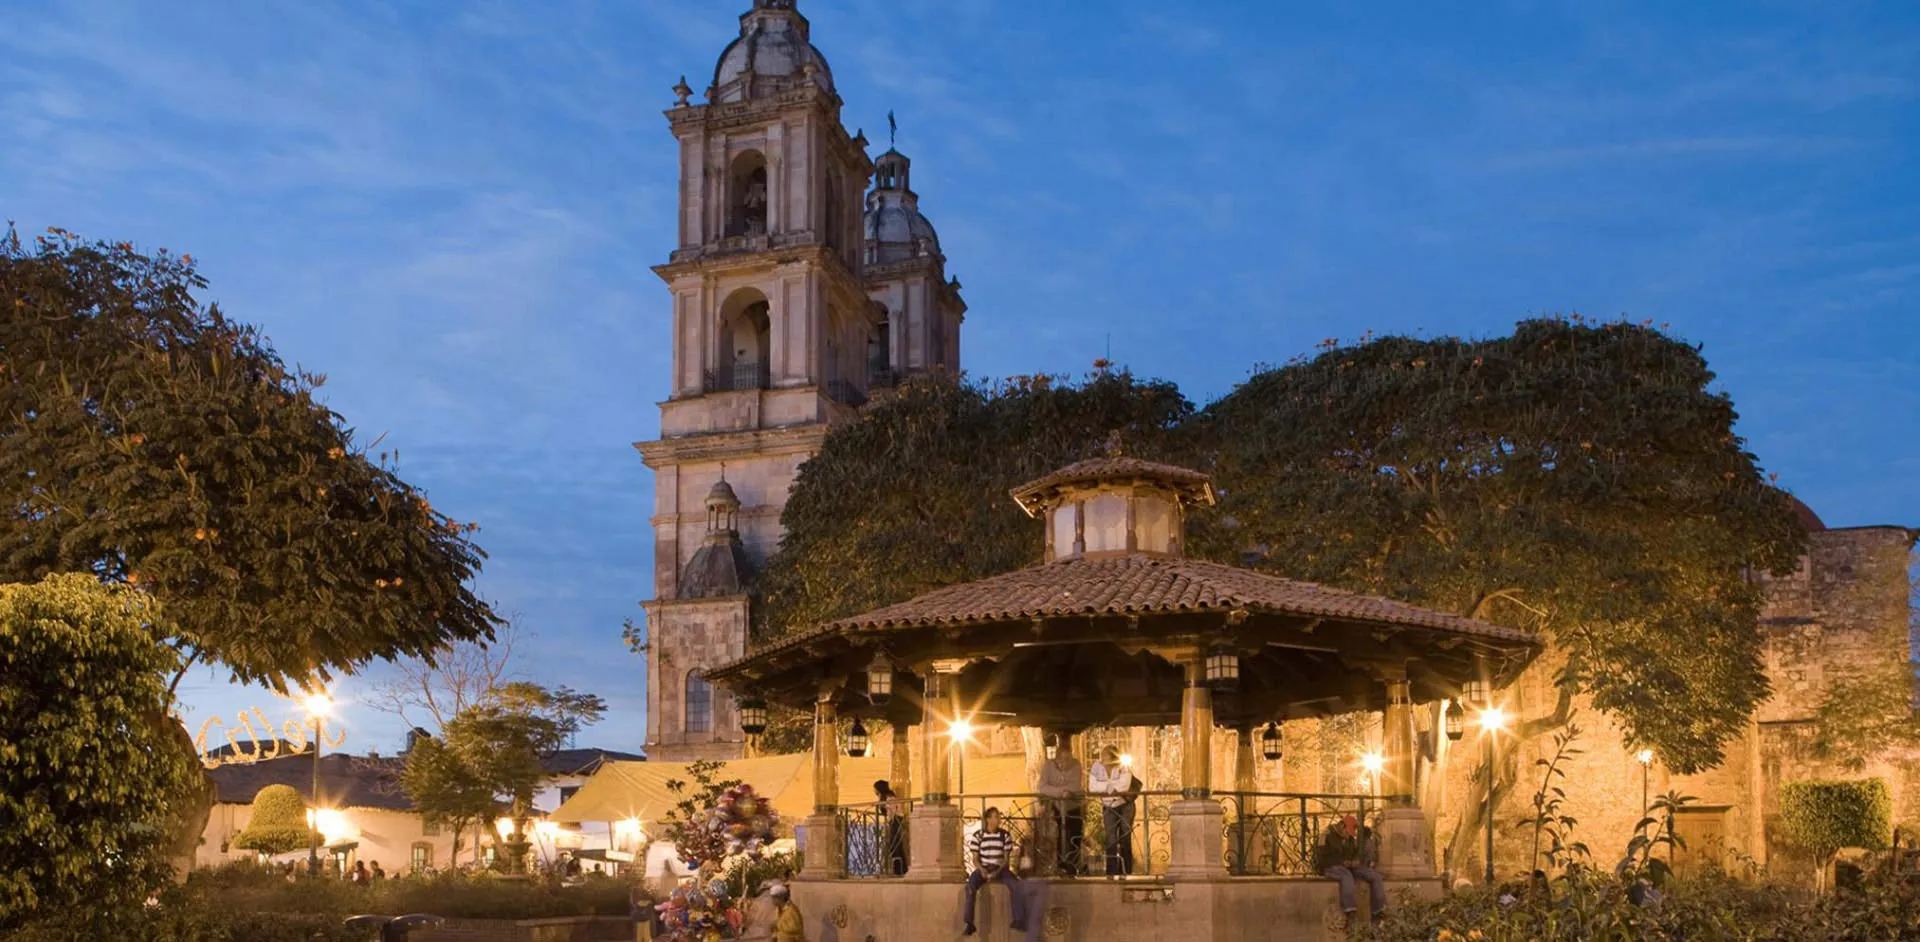 Nota sobre La riqueza de descubrir México a través de sus haciendas